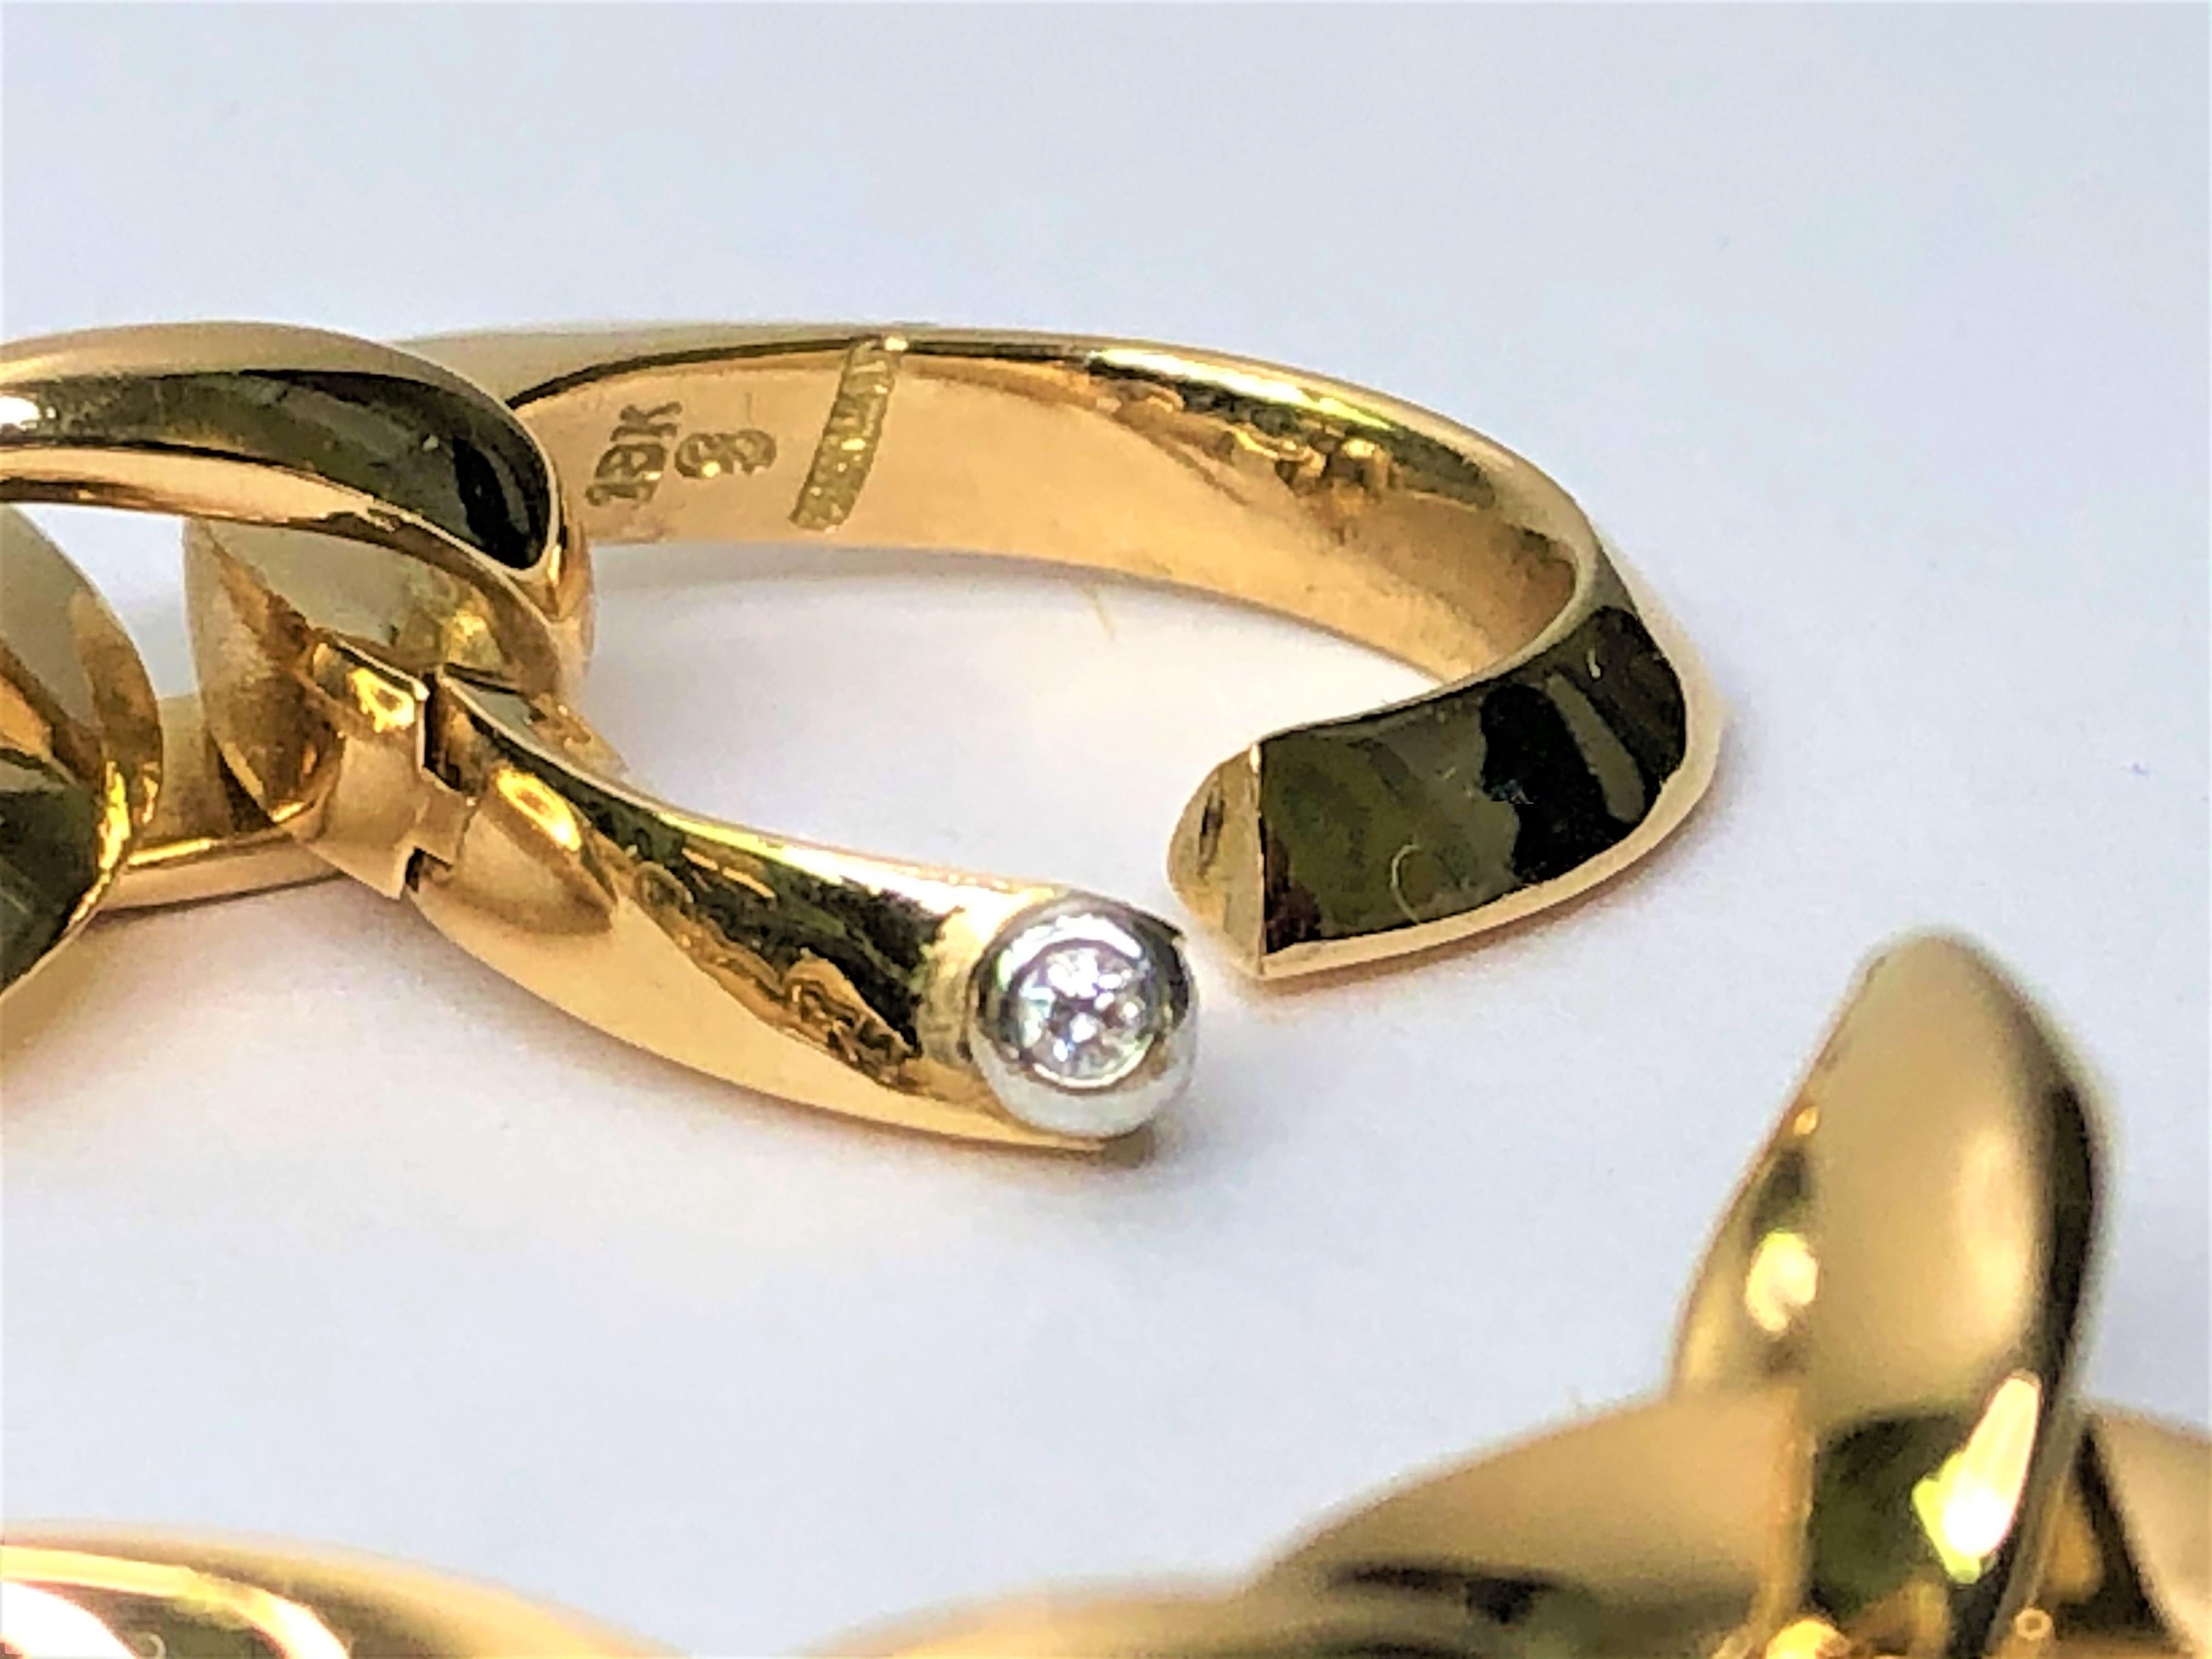 Conçu par le designer Louis Fiessler, ce lourd collier à maillons en or rose massif sera un ajout formidable à la collection de bijoux de tout un chacun !
Liens ovales en or rose 18 carats, chacun d'environ 22 mm x 18 mm, avec des connecteurs ovales